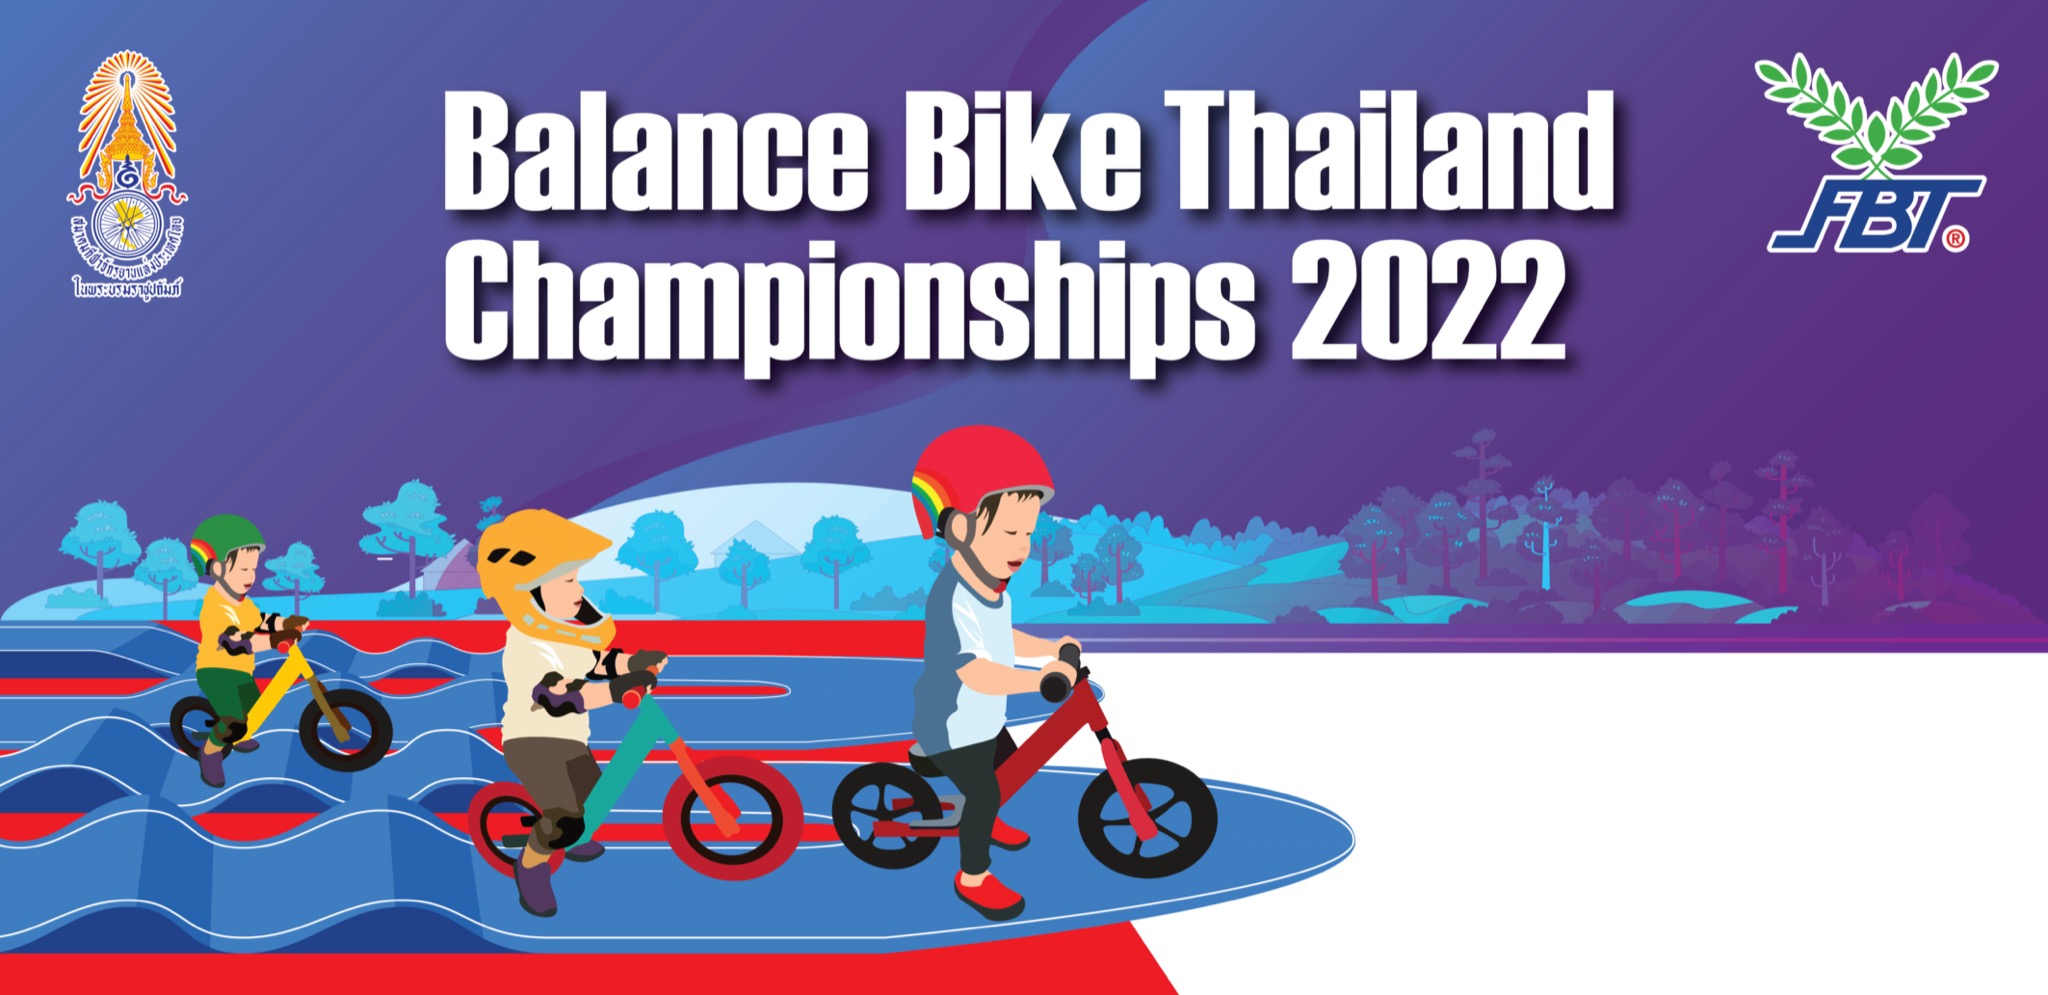 การแข่งขันจักรยาน หนูน้อยขาไถ ชิงแชมป์ประเทศไทย (Balance Bike Thailand Championships) สนามที่ 1 ประจำปี 2565